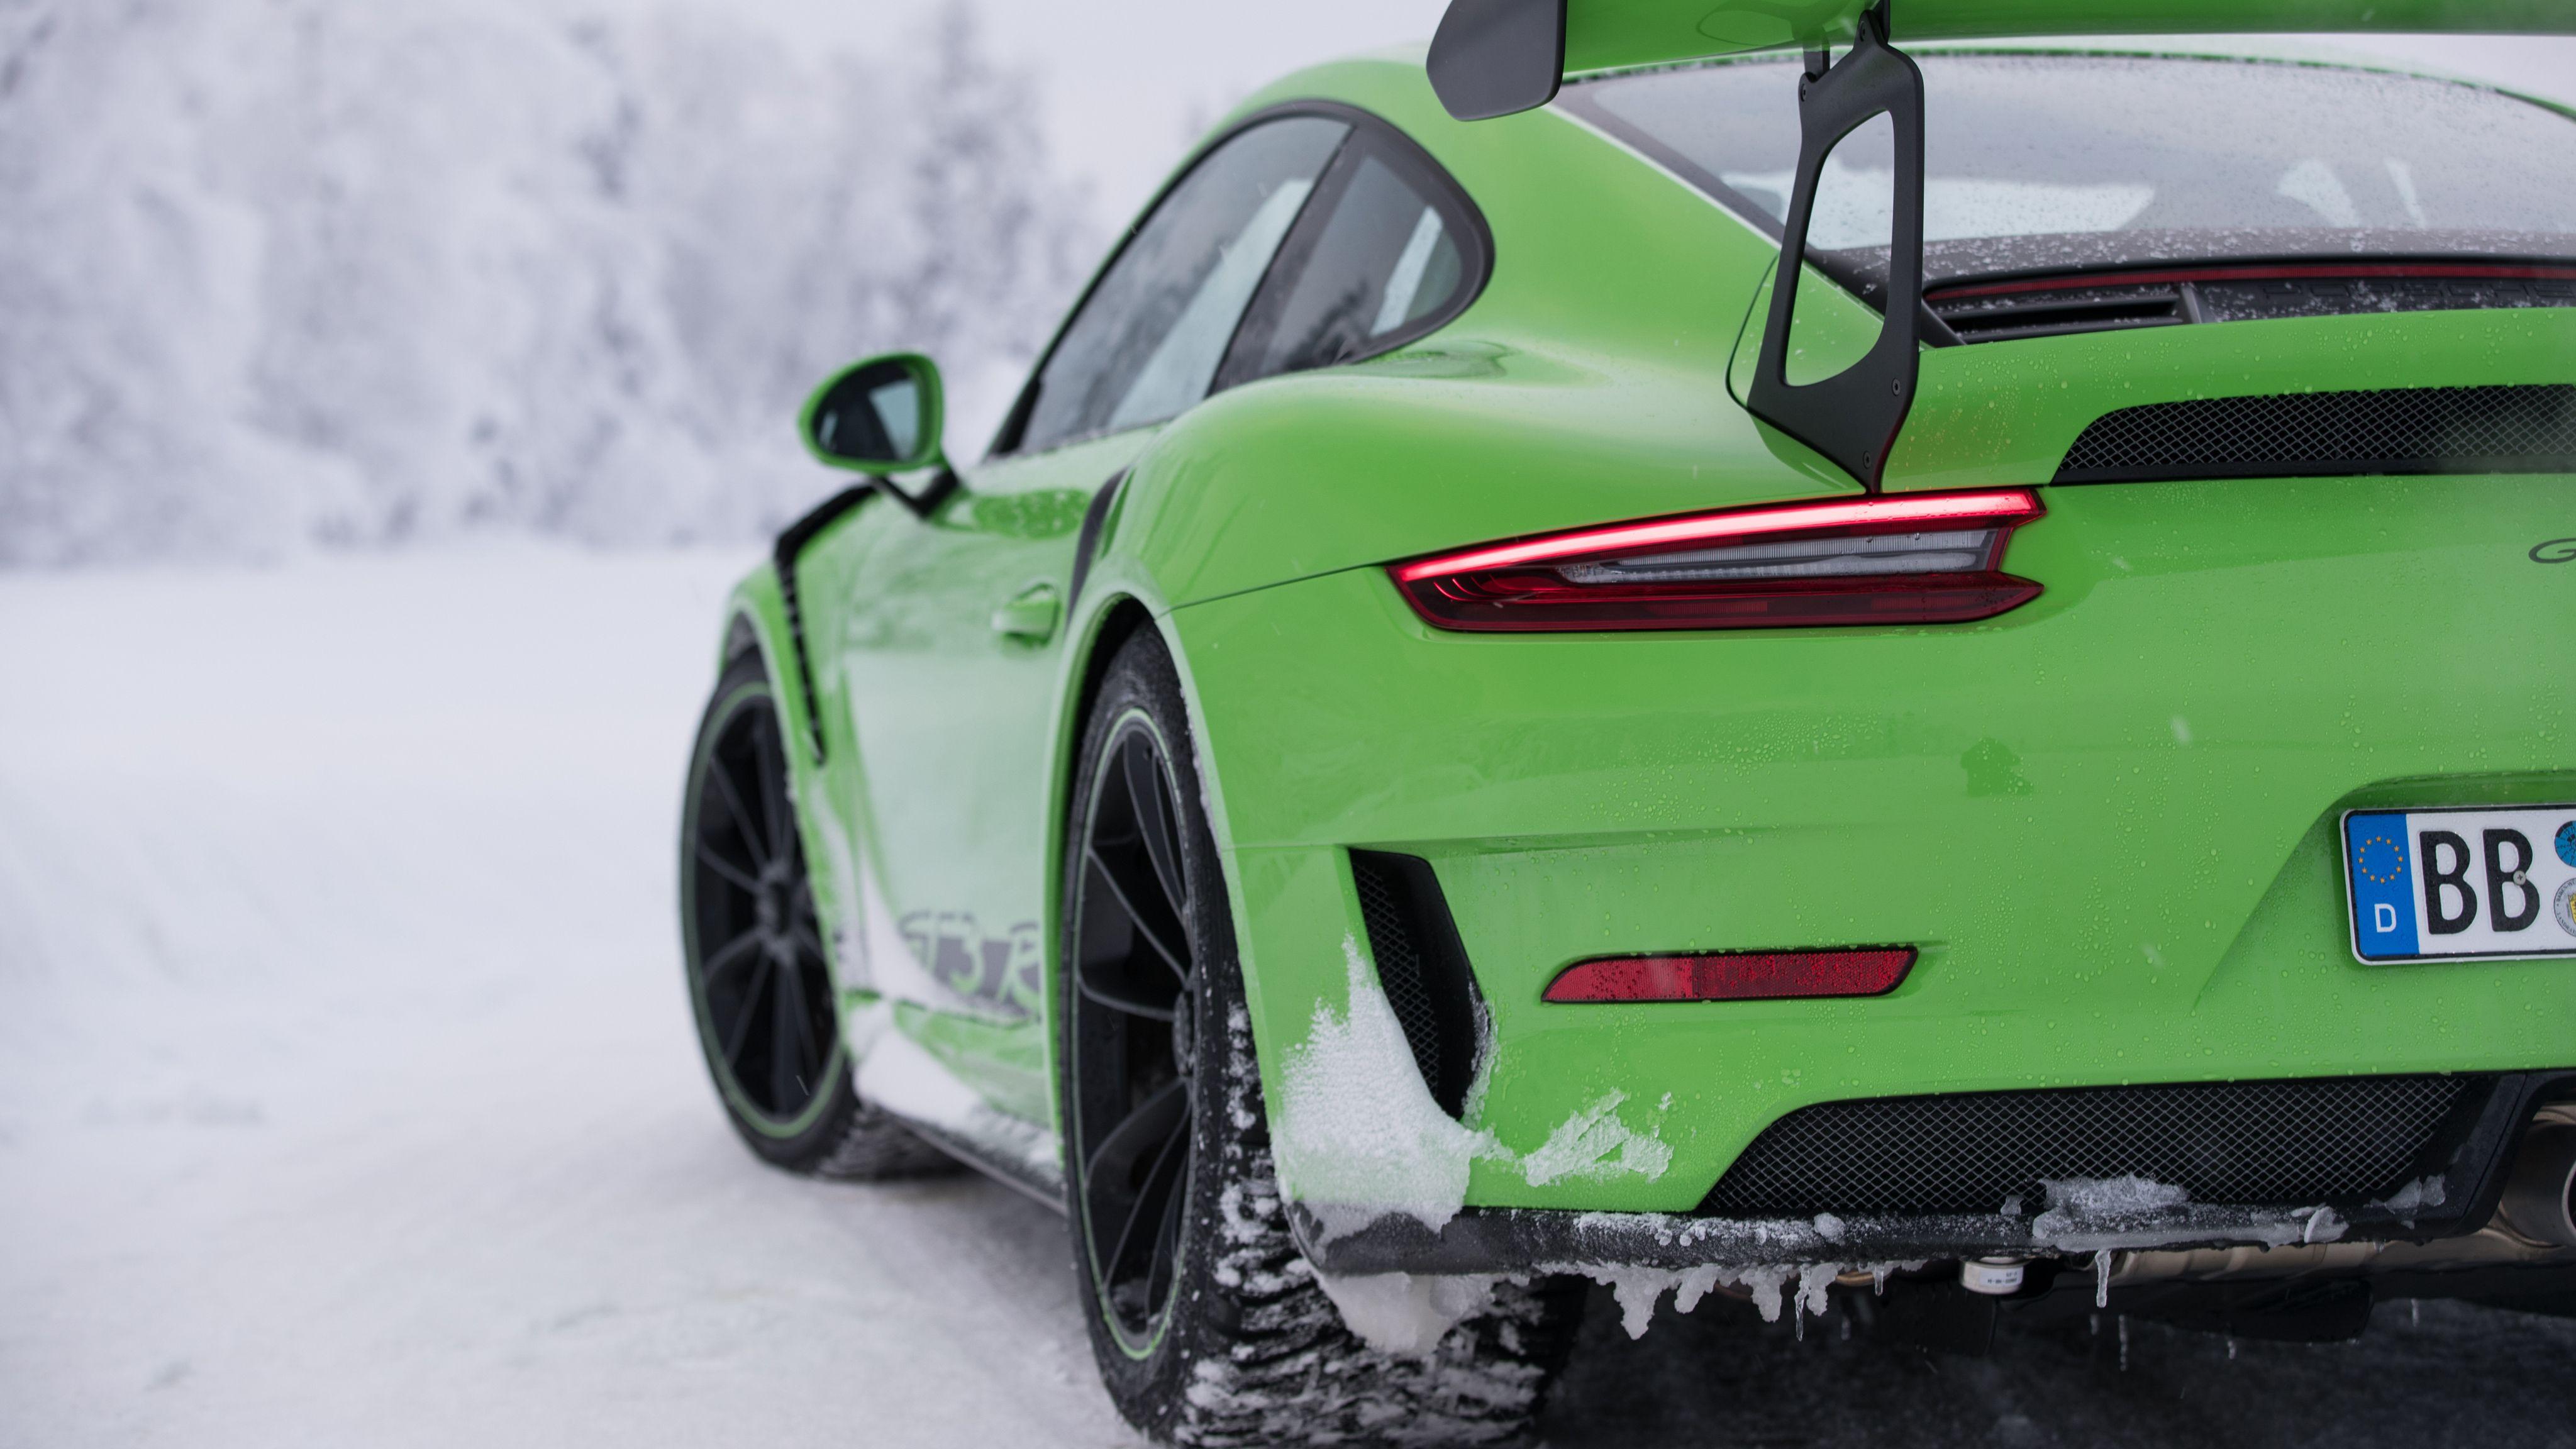 Green Porsche Wallpapers Top Free Green Porsche Backgrounds Wallpaperaccess